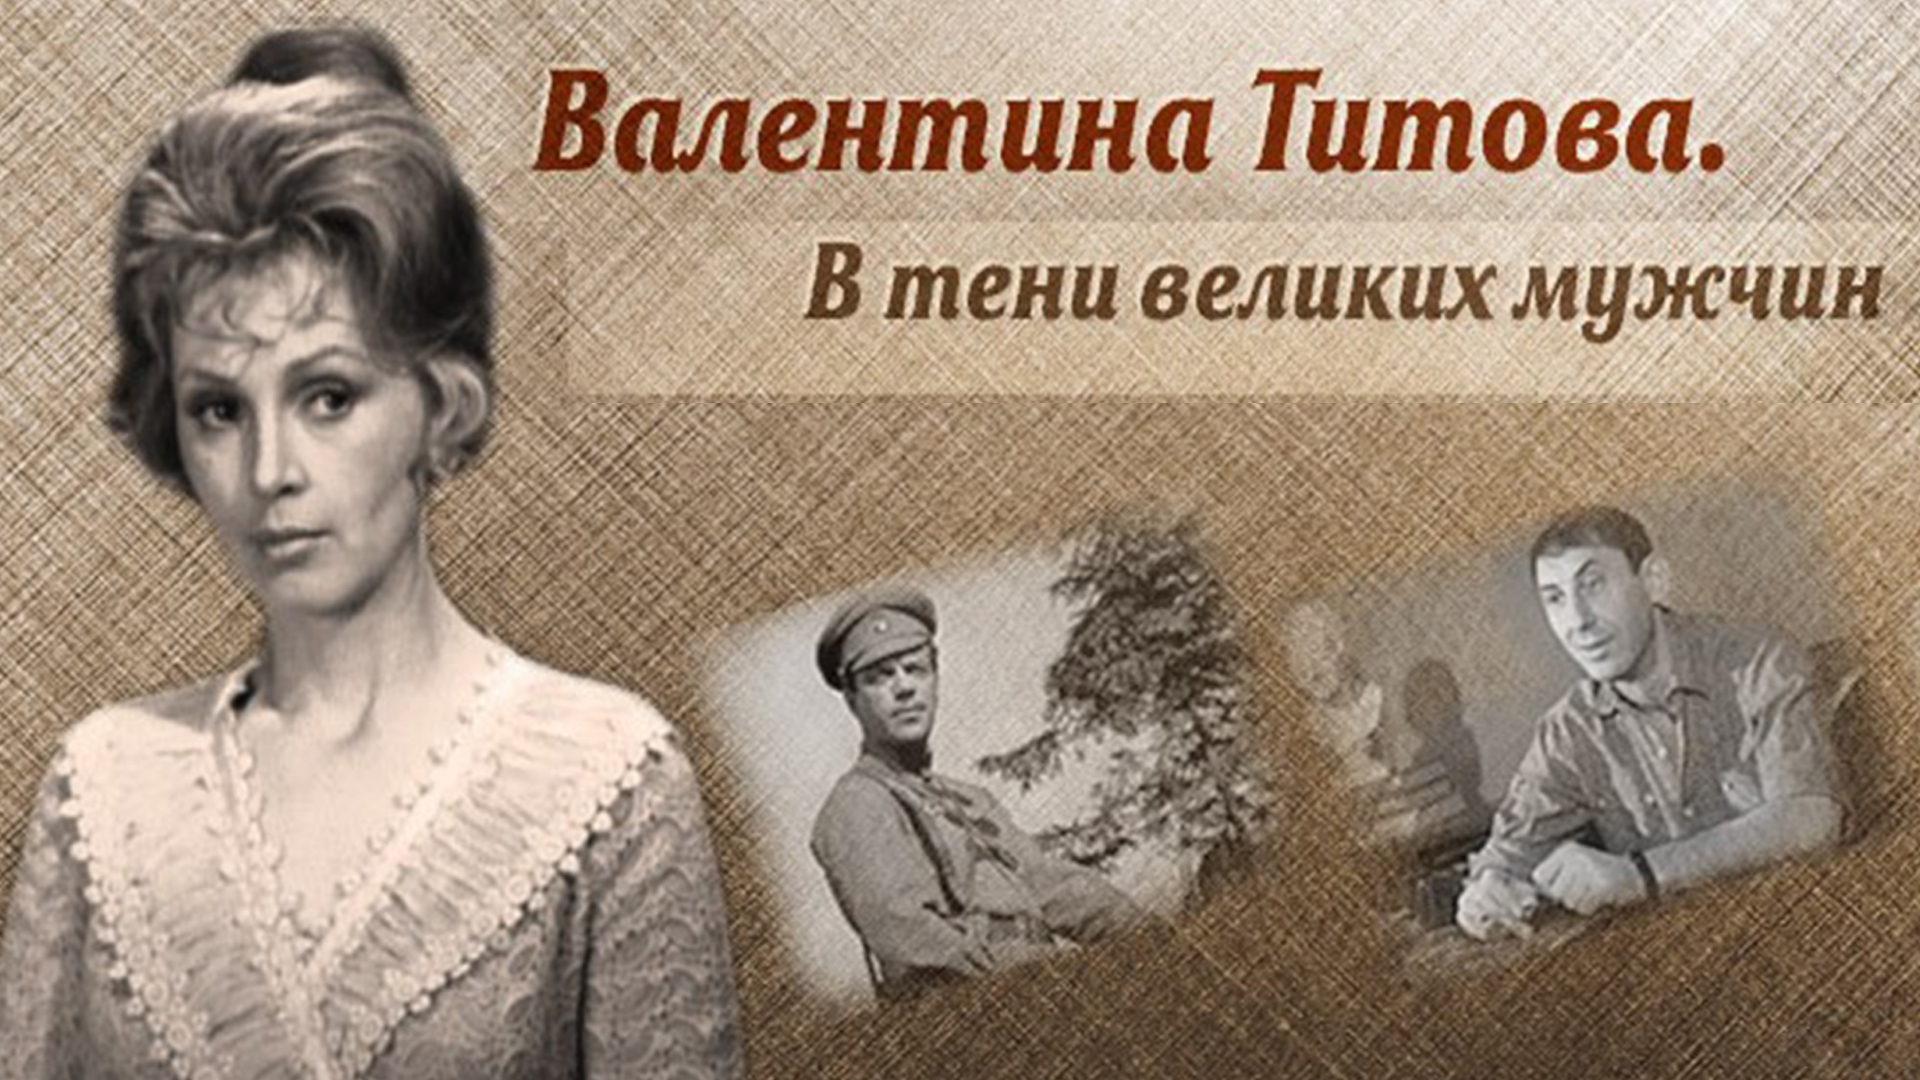 Титова, Валентина Антиповна